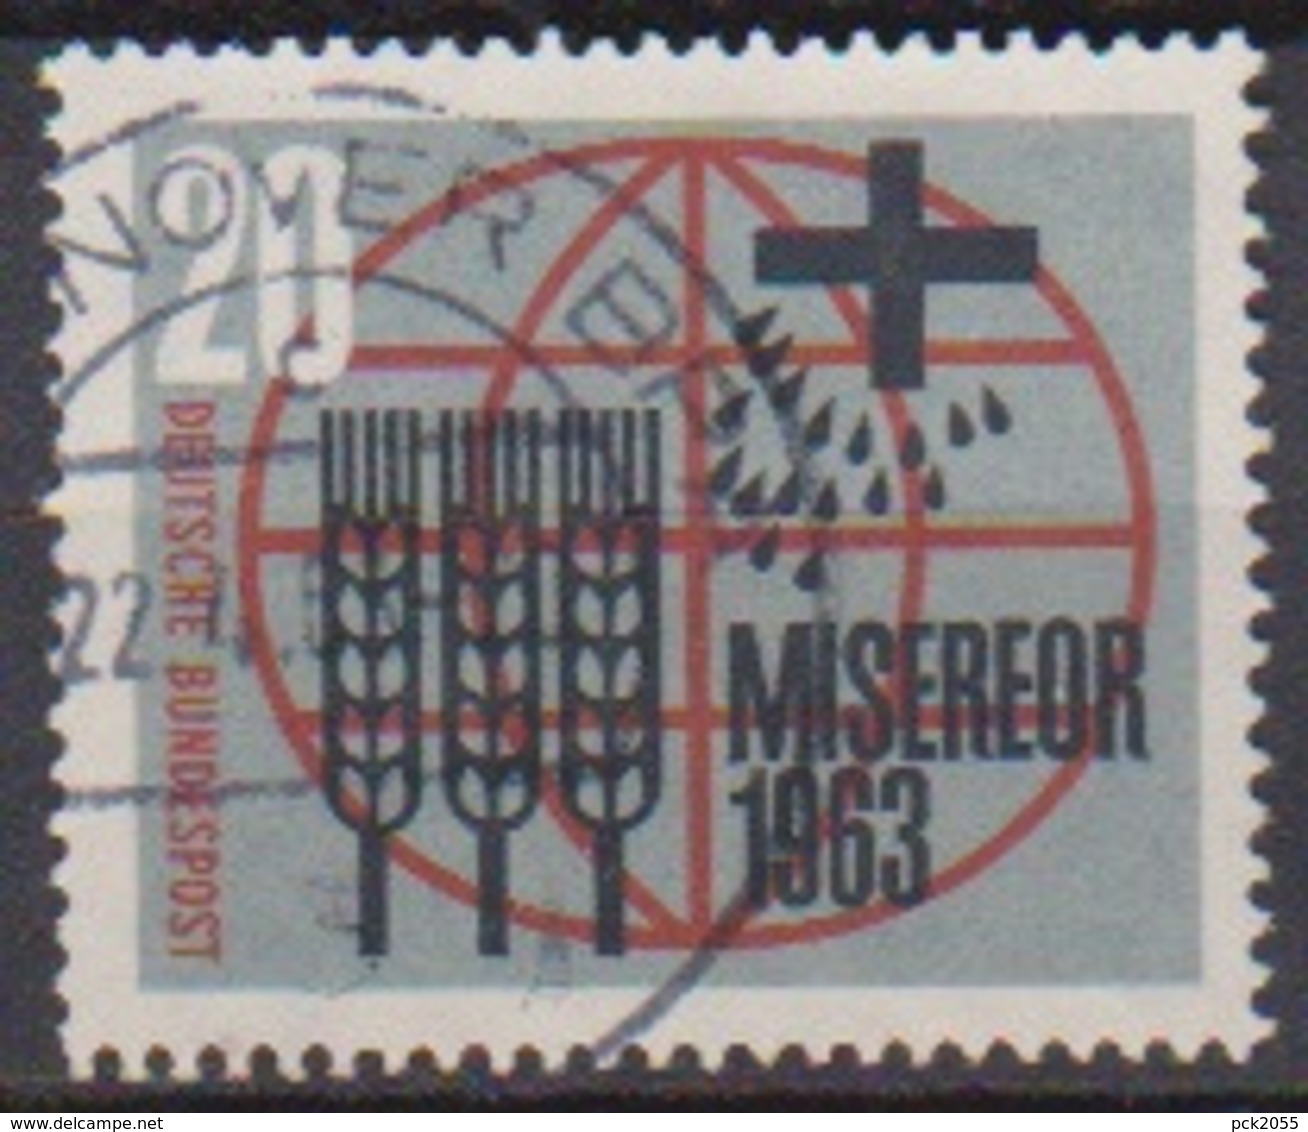 BRD 1963 MiNr.391 Misereor ( A649 ) Günstige Versandkosten - Used Stamps